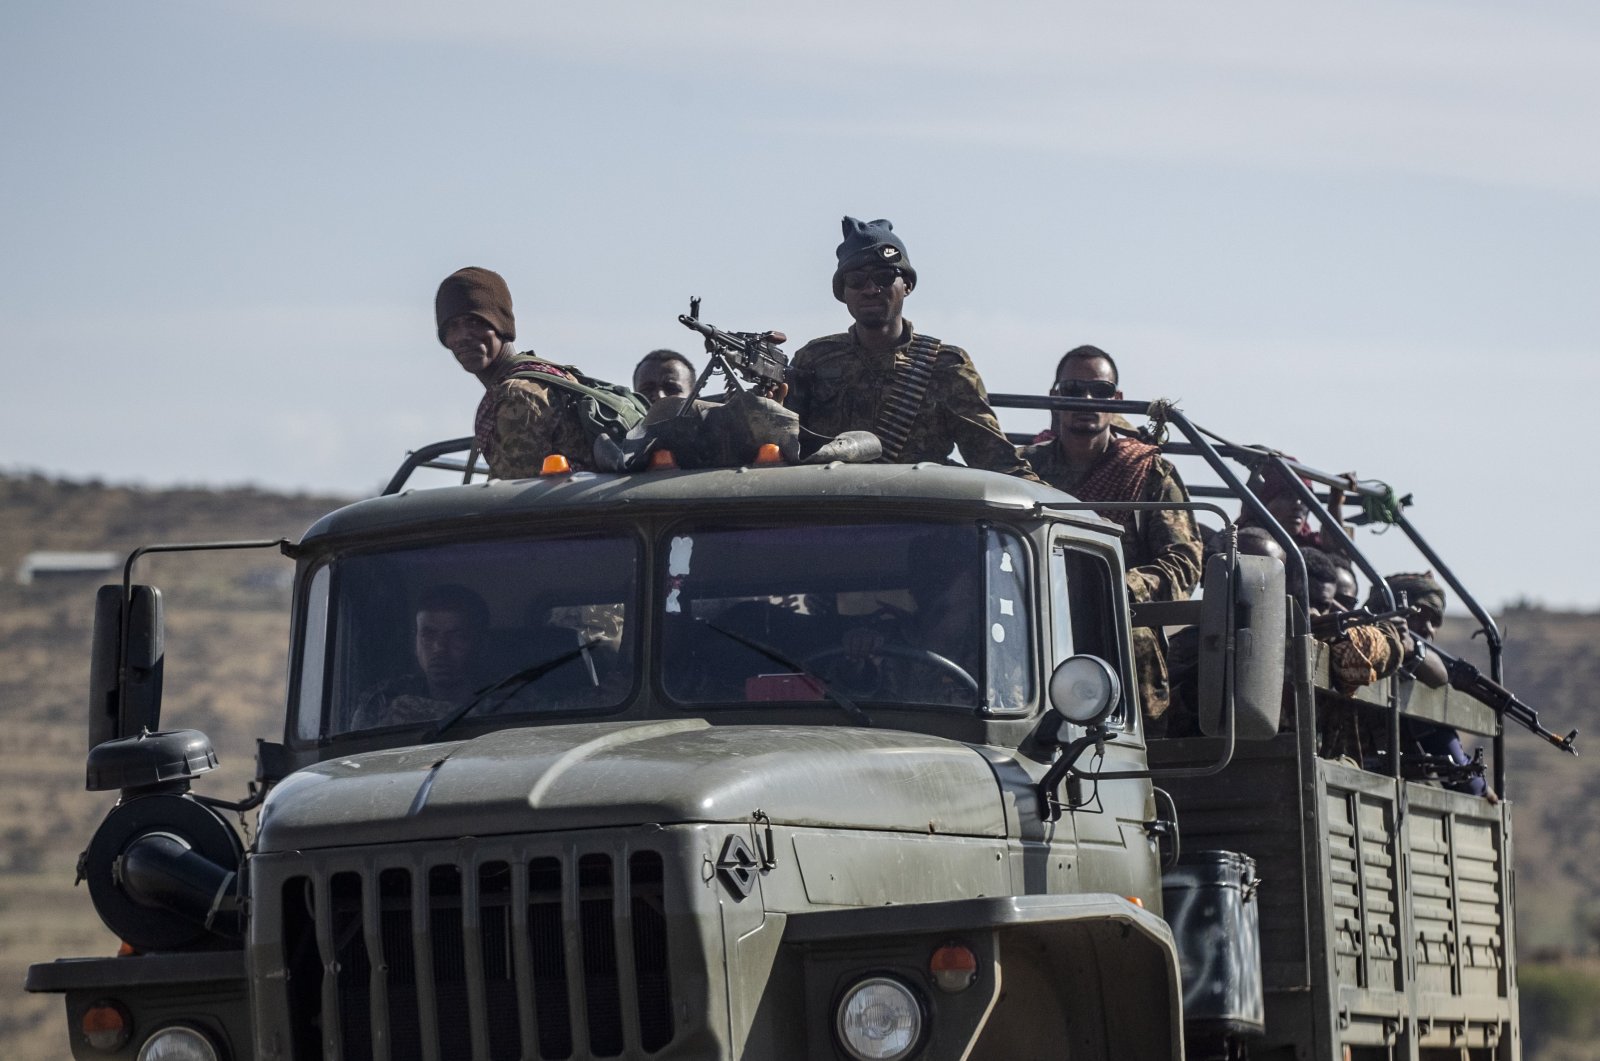 Serangan Ethiopia tewaskan 6 tentara Sudan, kata militer Sudan